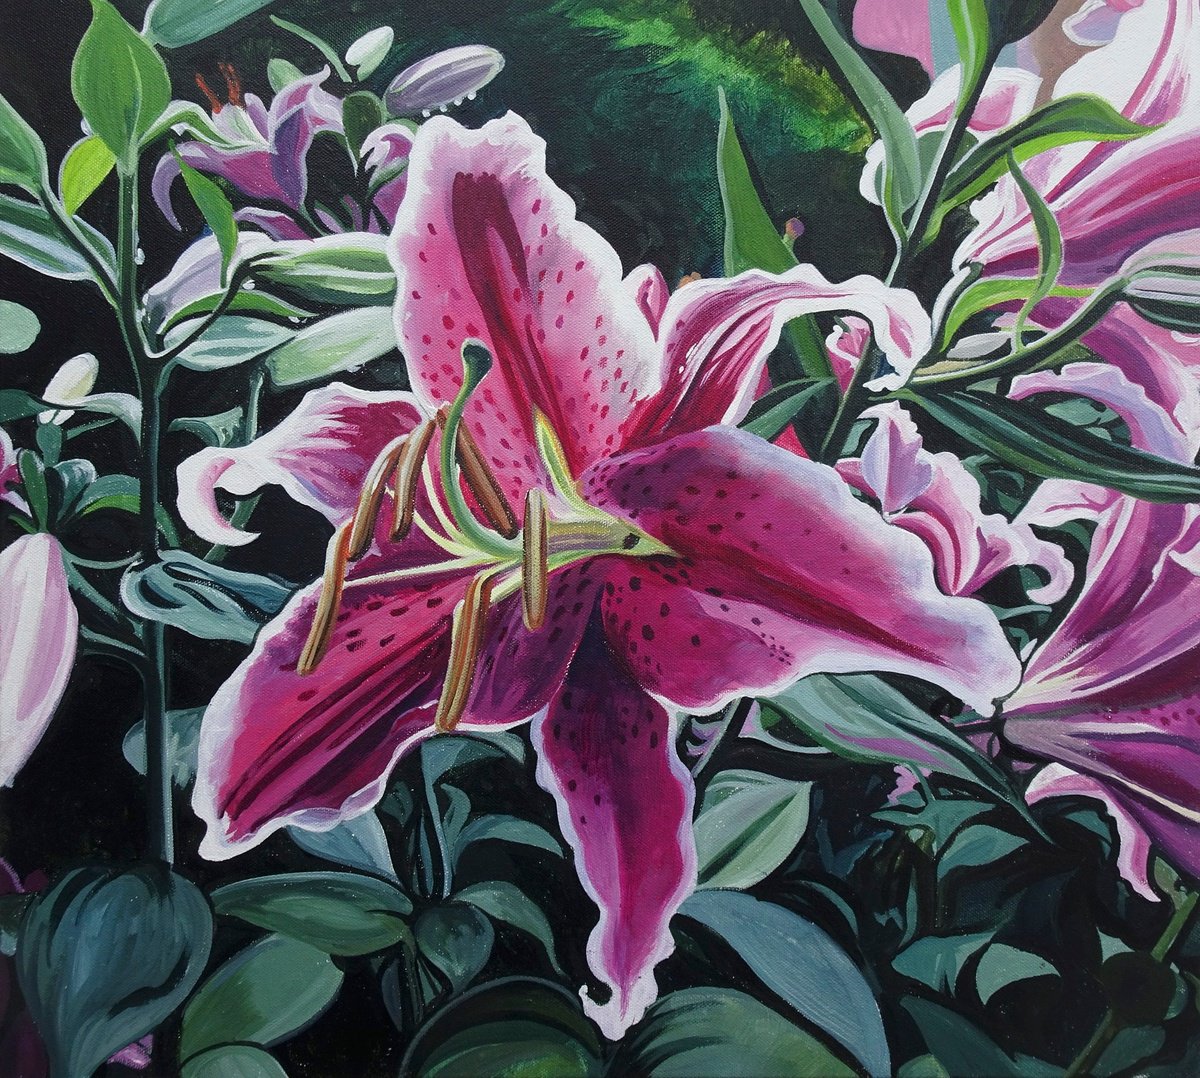 Stargazer Lilies by Joseph Lynch